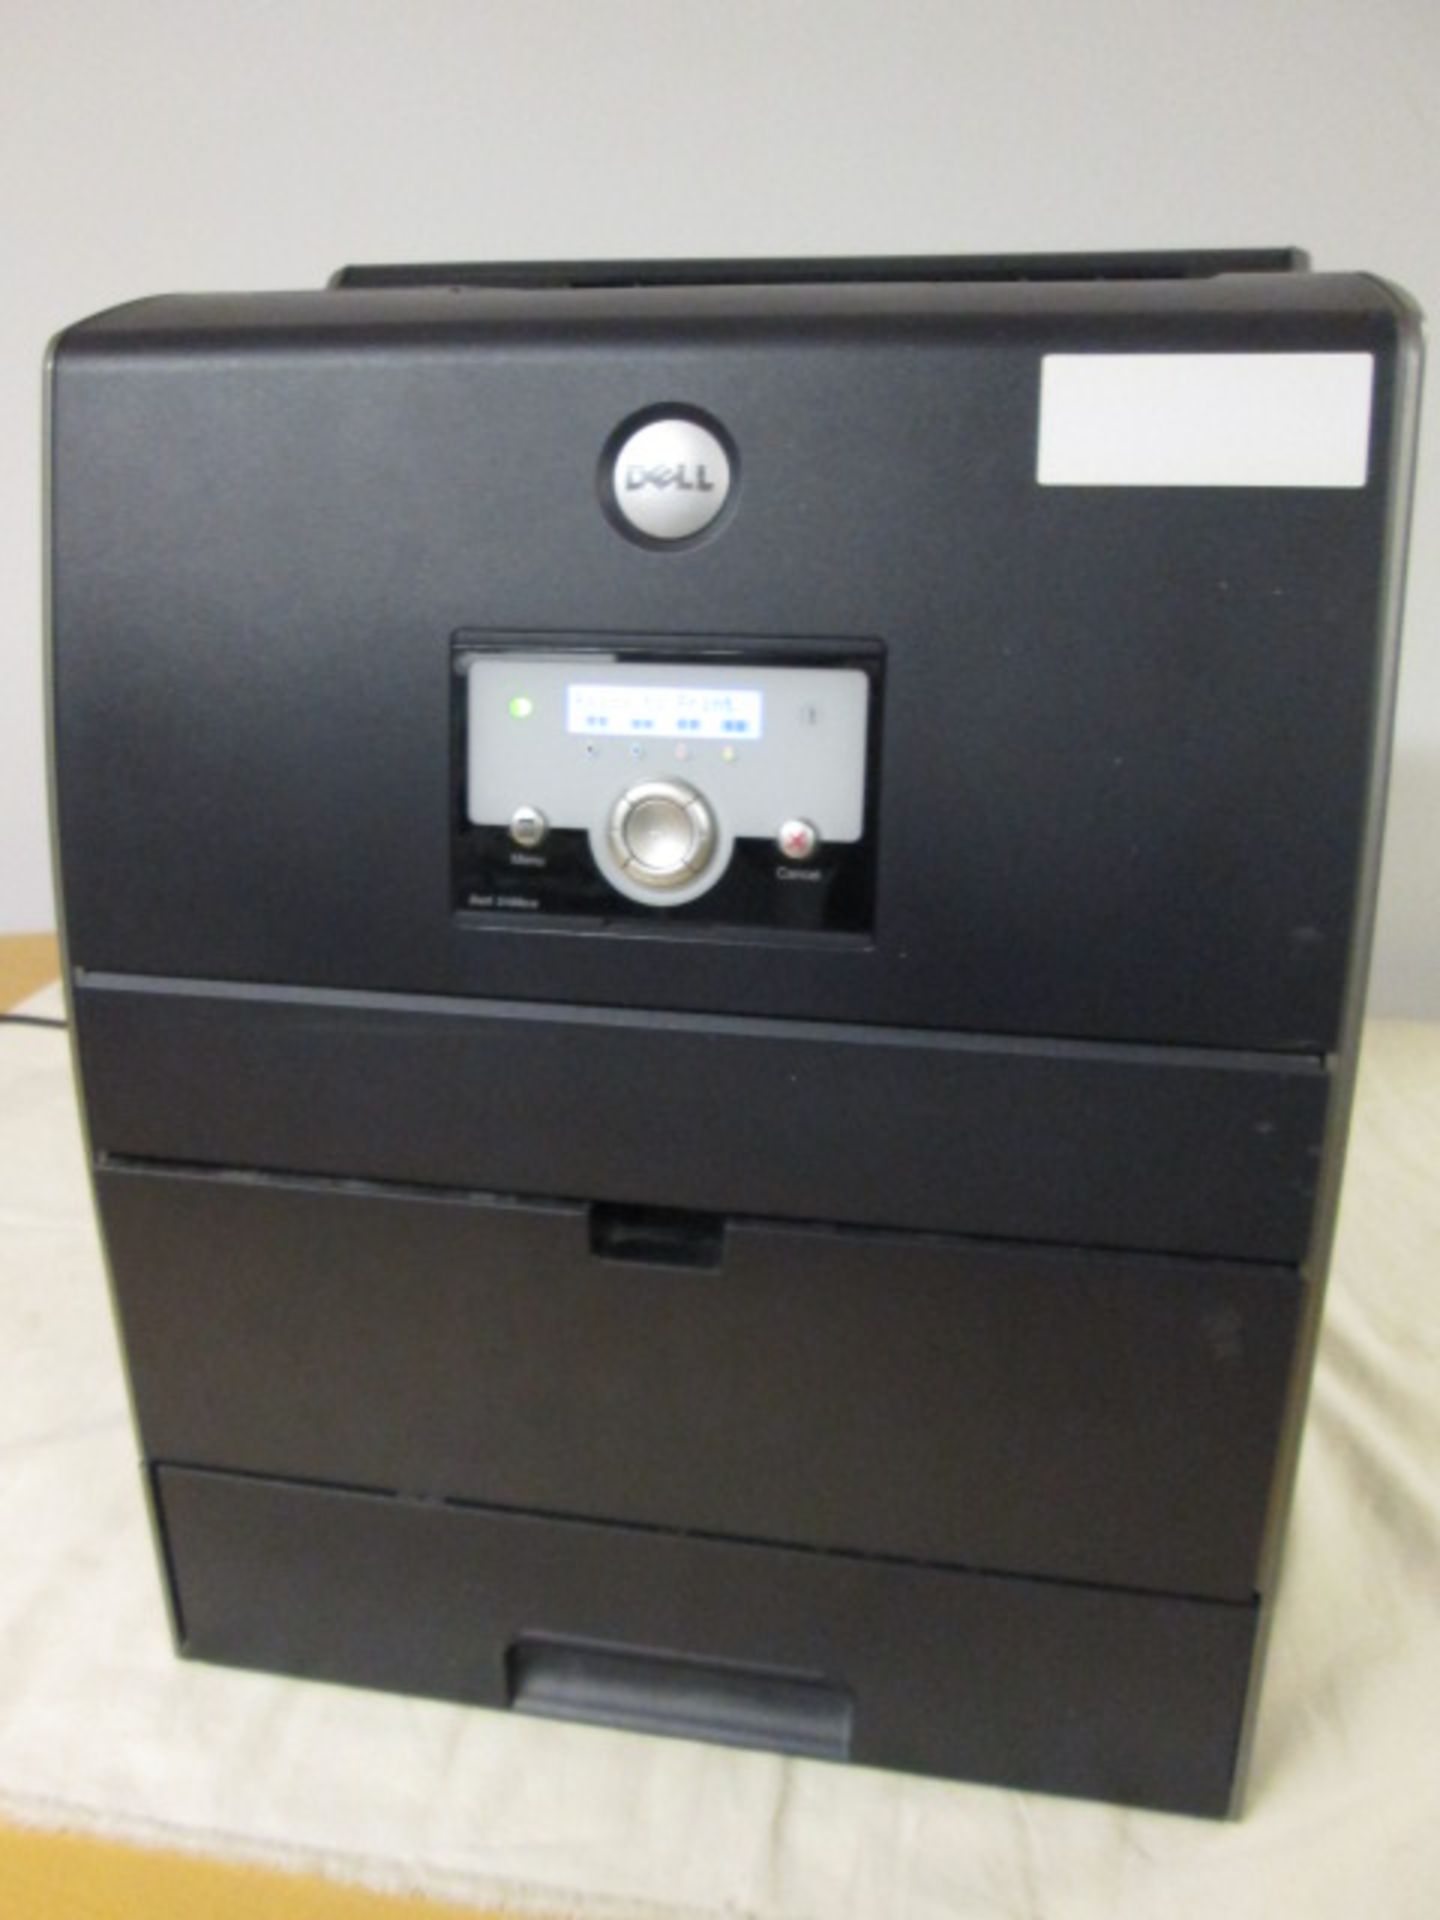 Dell Colour Laser Printer 3100cn